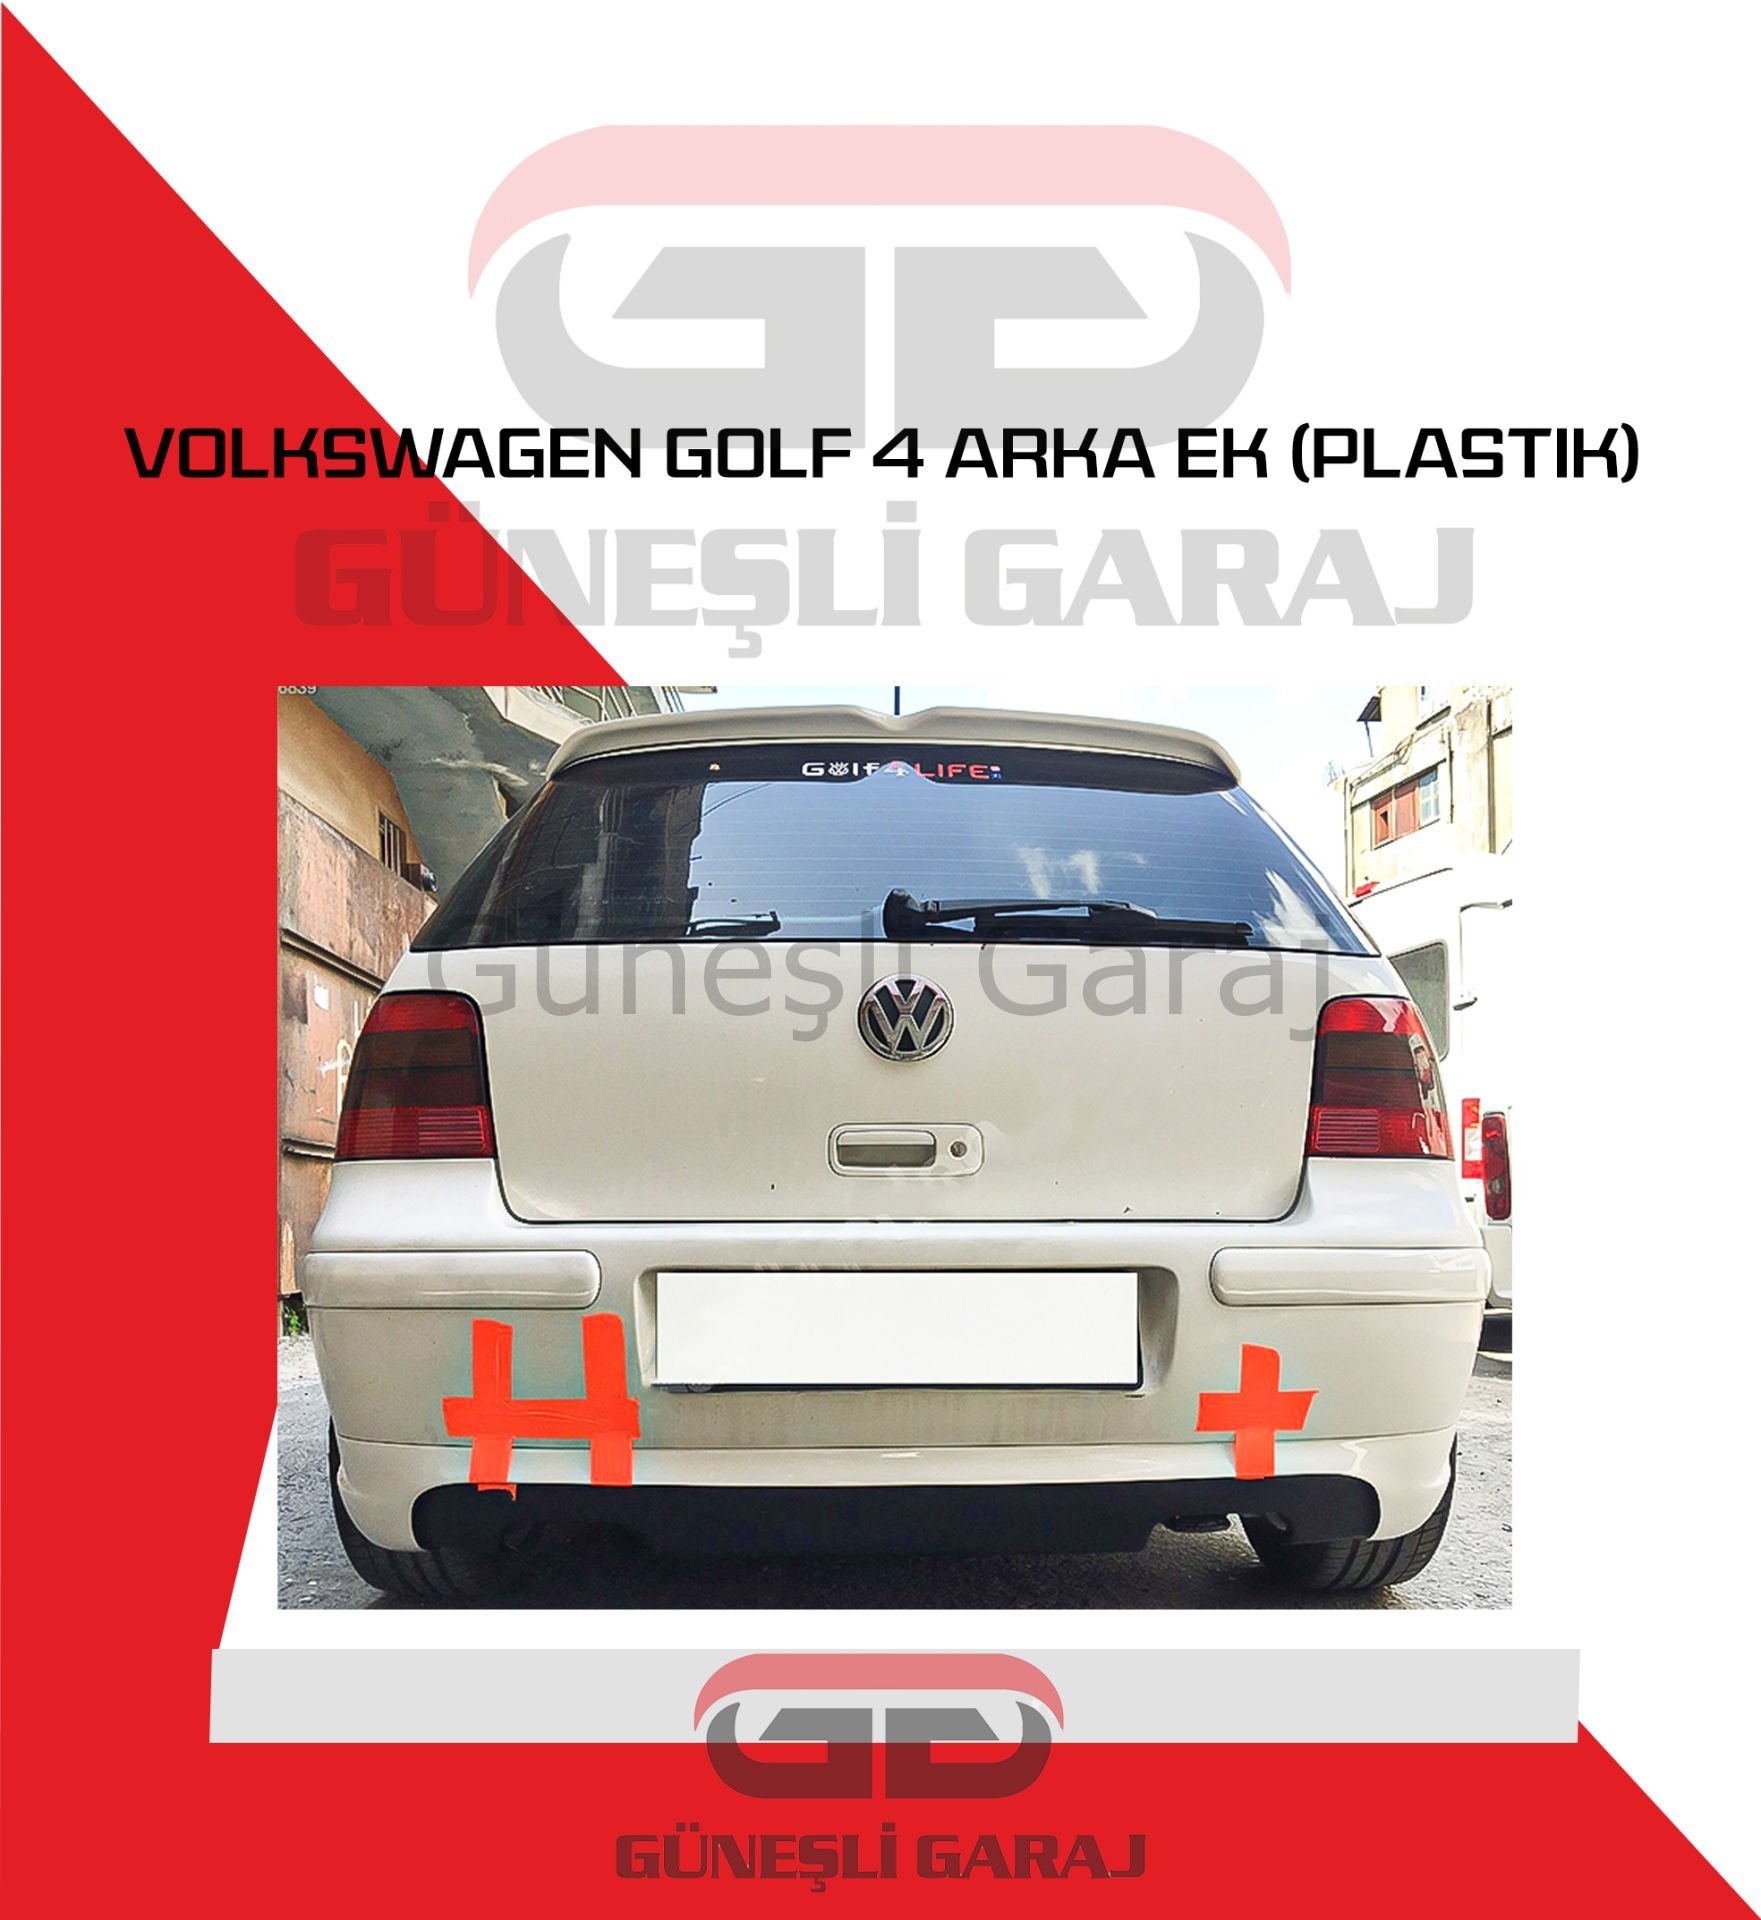 Volkswagen Golf 4 Arka Ek (Plastik)